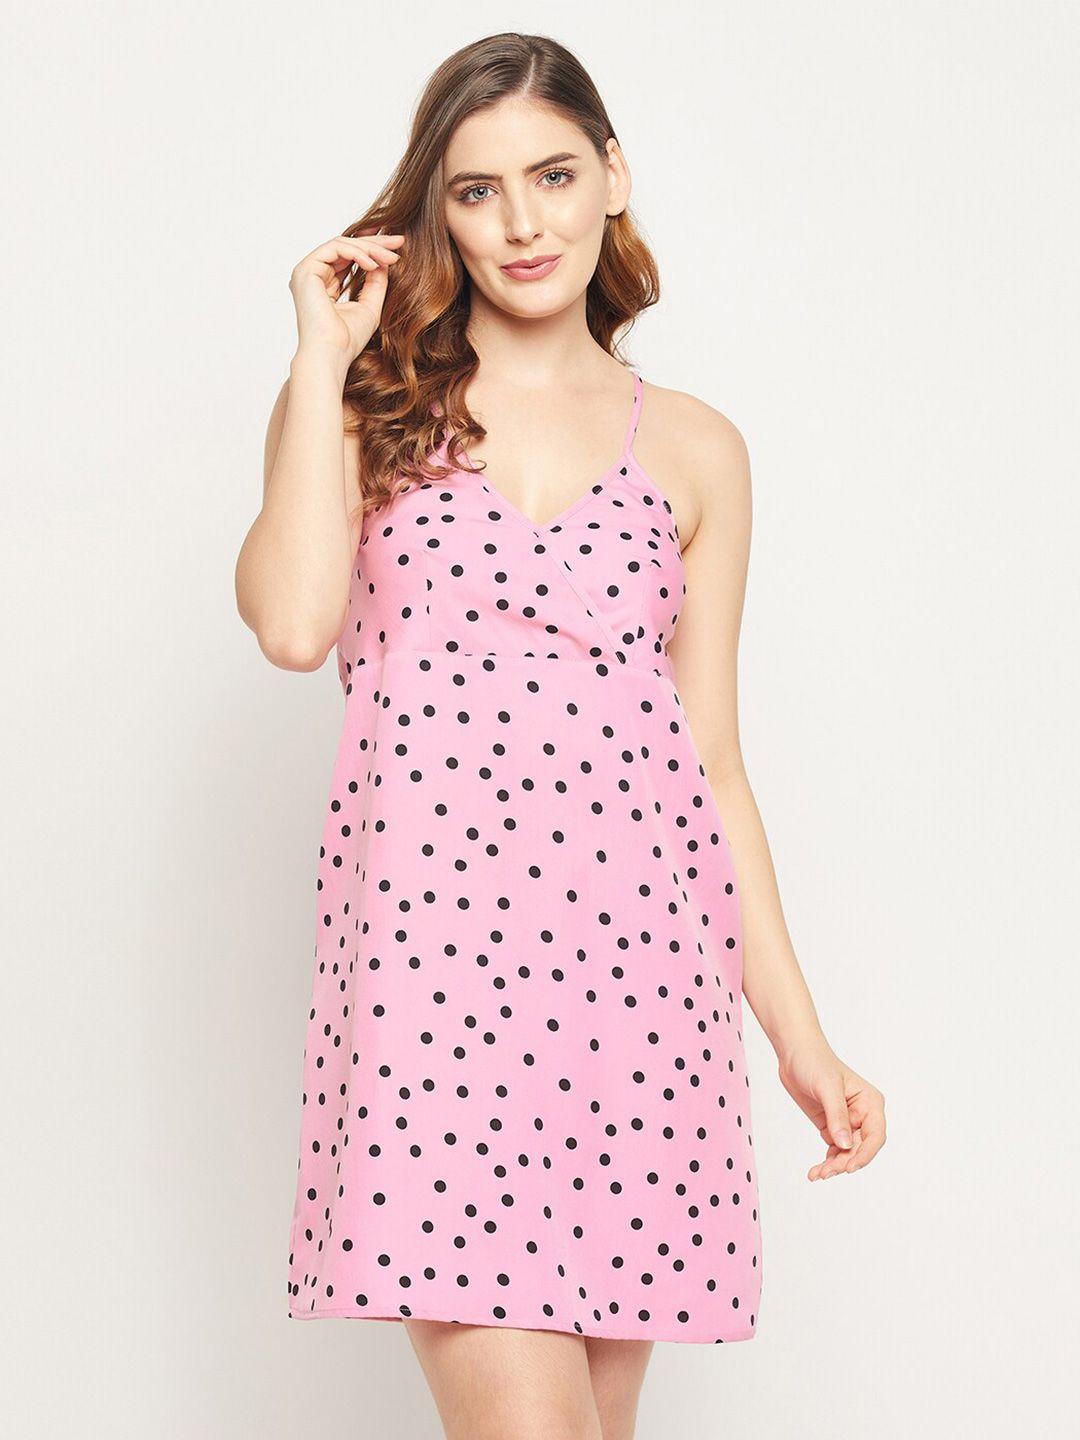 clovia pink crepe dress